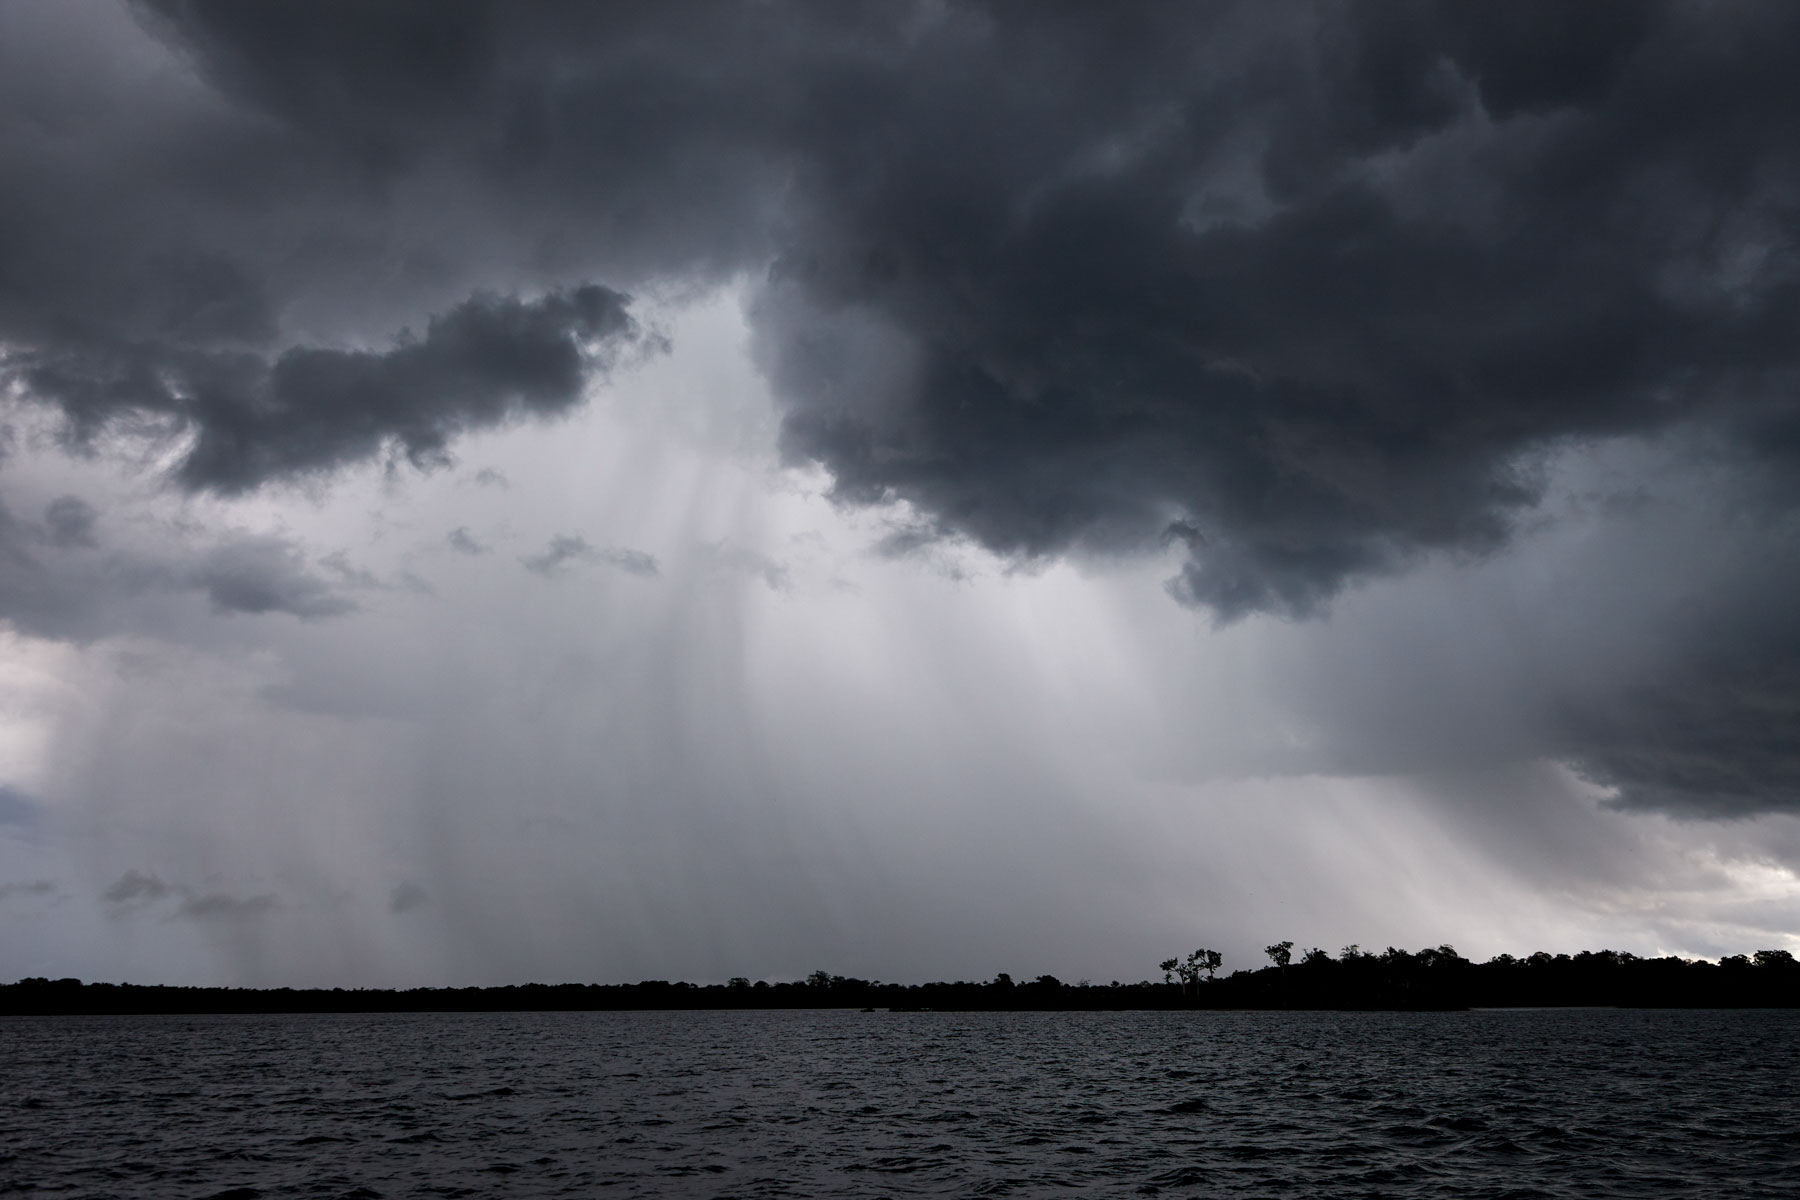 Bedrohliches Bild einer riesigen dunklen Regenwolke über einem Gewässer, aus der sich der sichtbare Regen ergießt